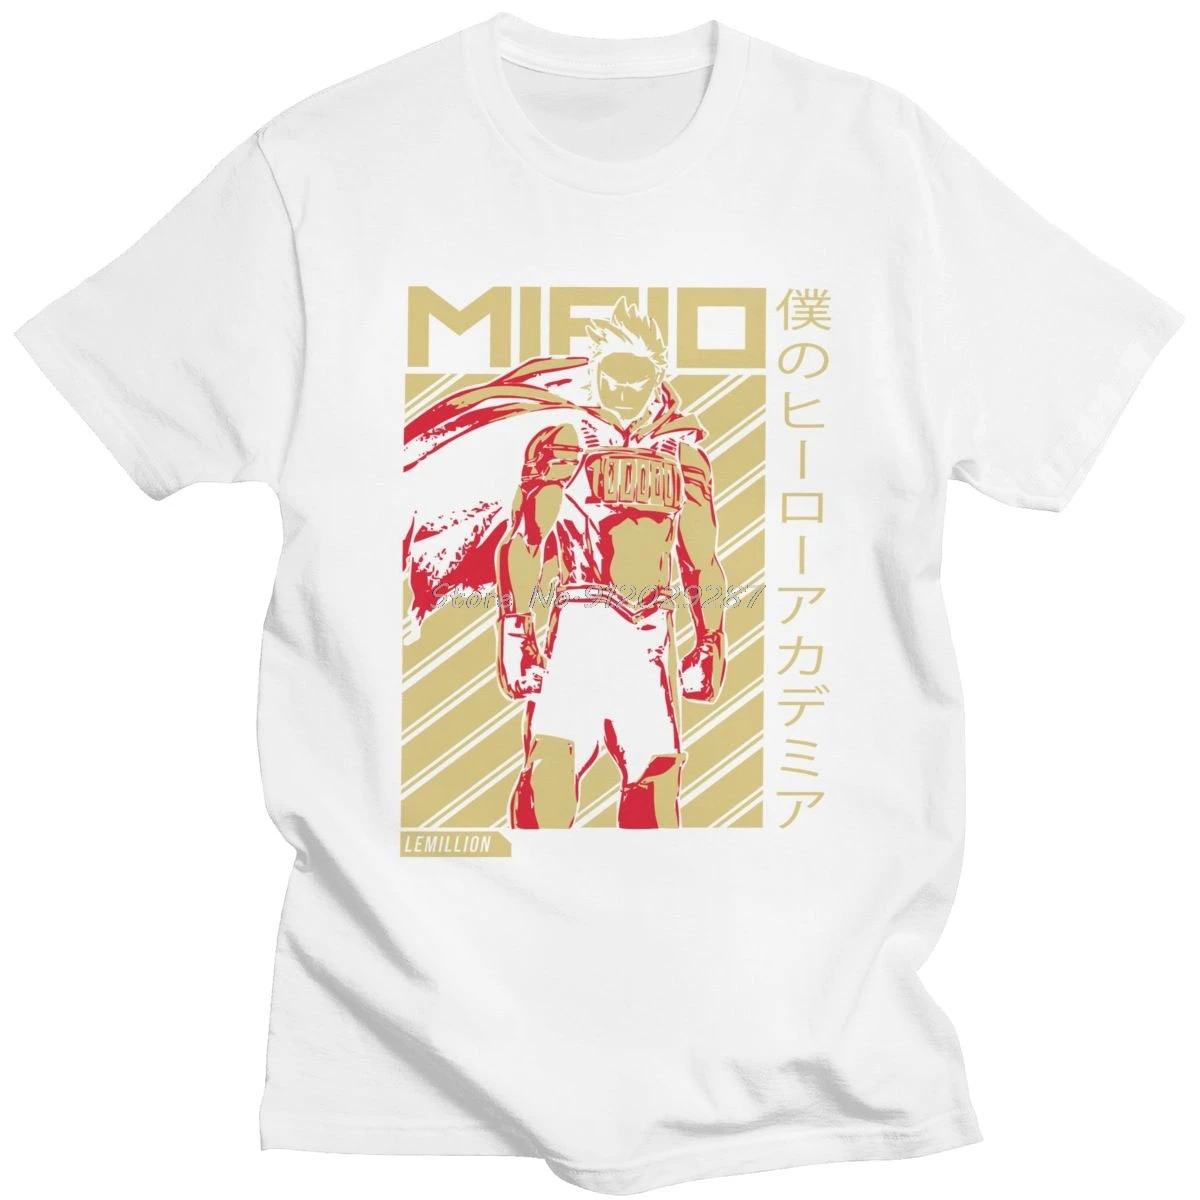 Tanio Mirio Togata T Shirt dla mężczyzn bawełna niesamowita koszulka sklep